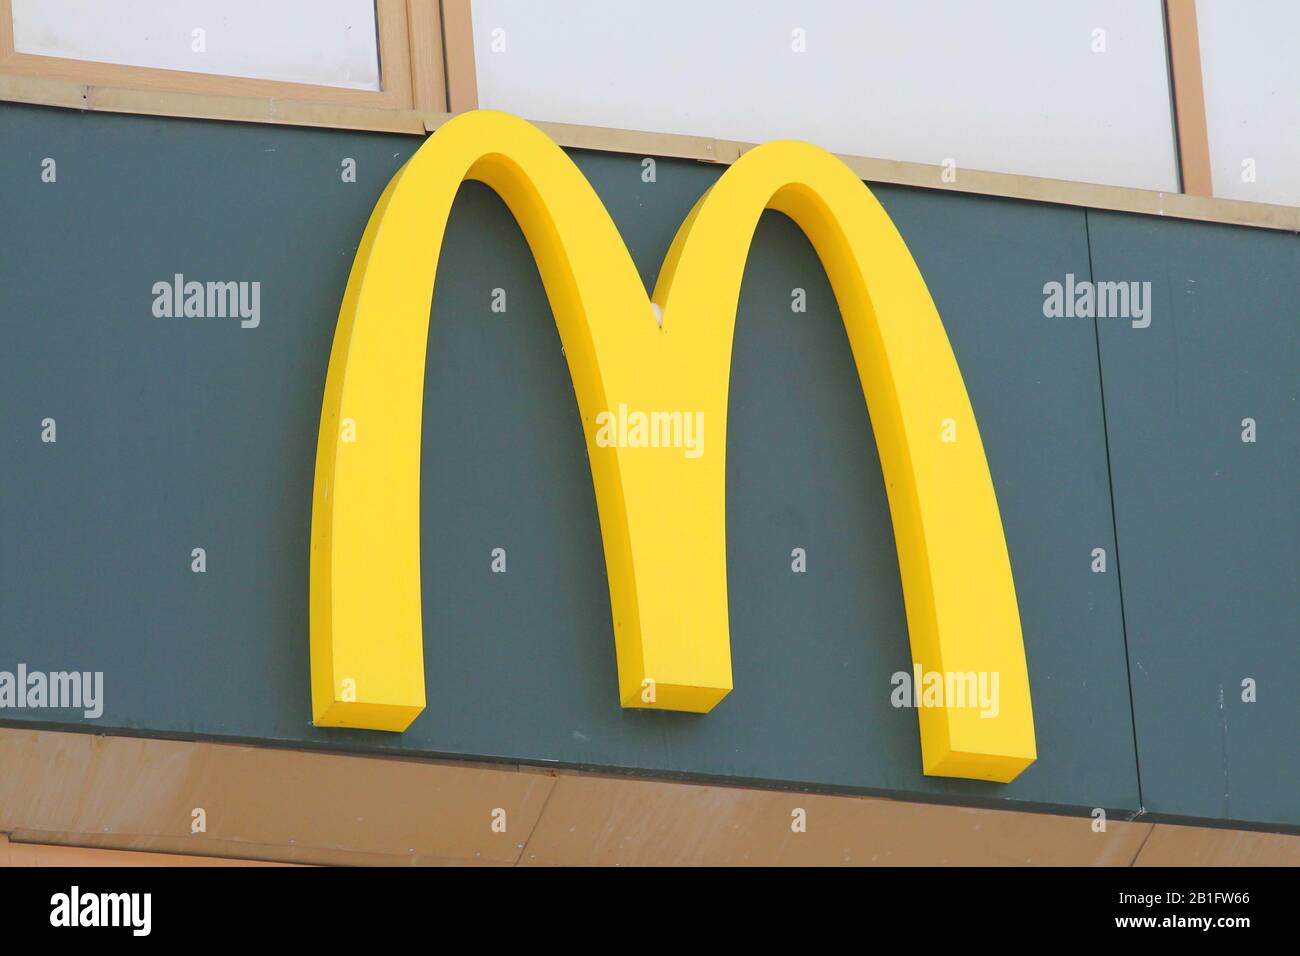 29.12.2019 Syktyvkar, Russland, gelber Großbuchstabe M, Fast-Food-Restaurant mcdonalds Signboard. Stock-Foto für Web und Print. Stockfoto